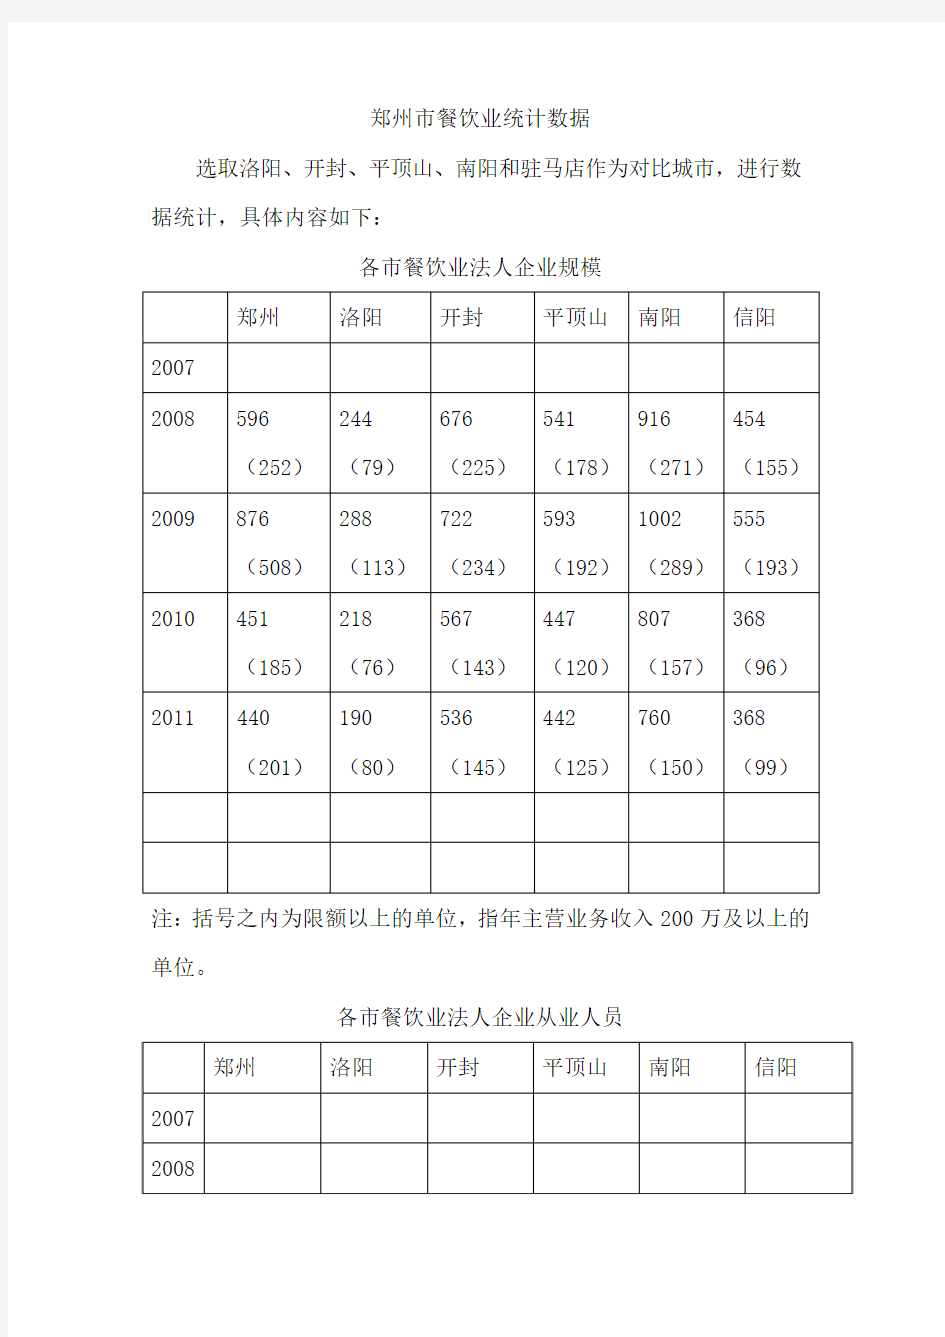 郑州市餐饮业统计数据